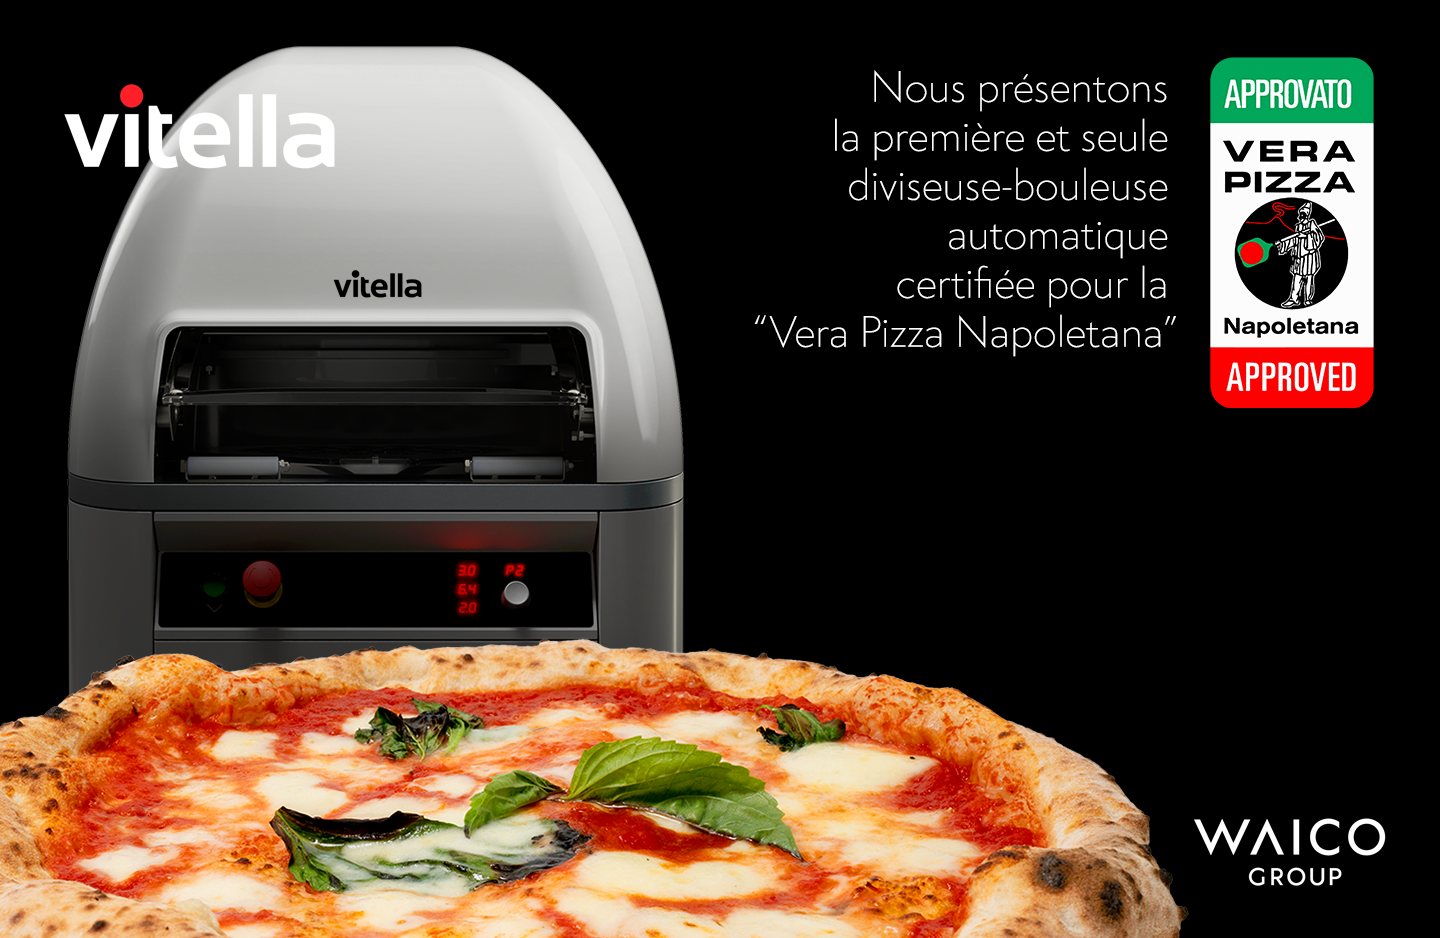 Vitella Vera Pizza Napoletana FRA